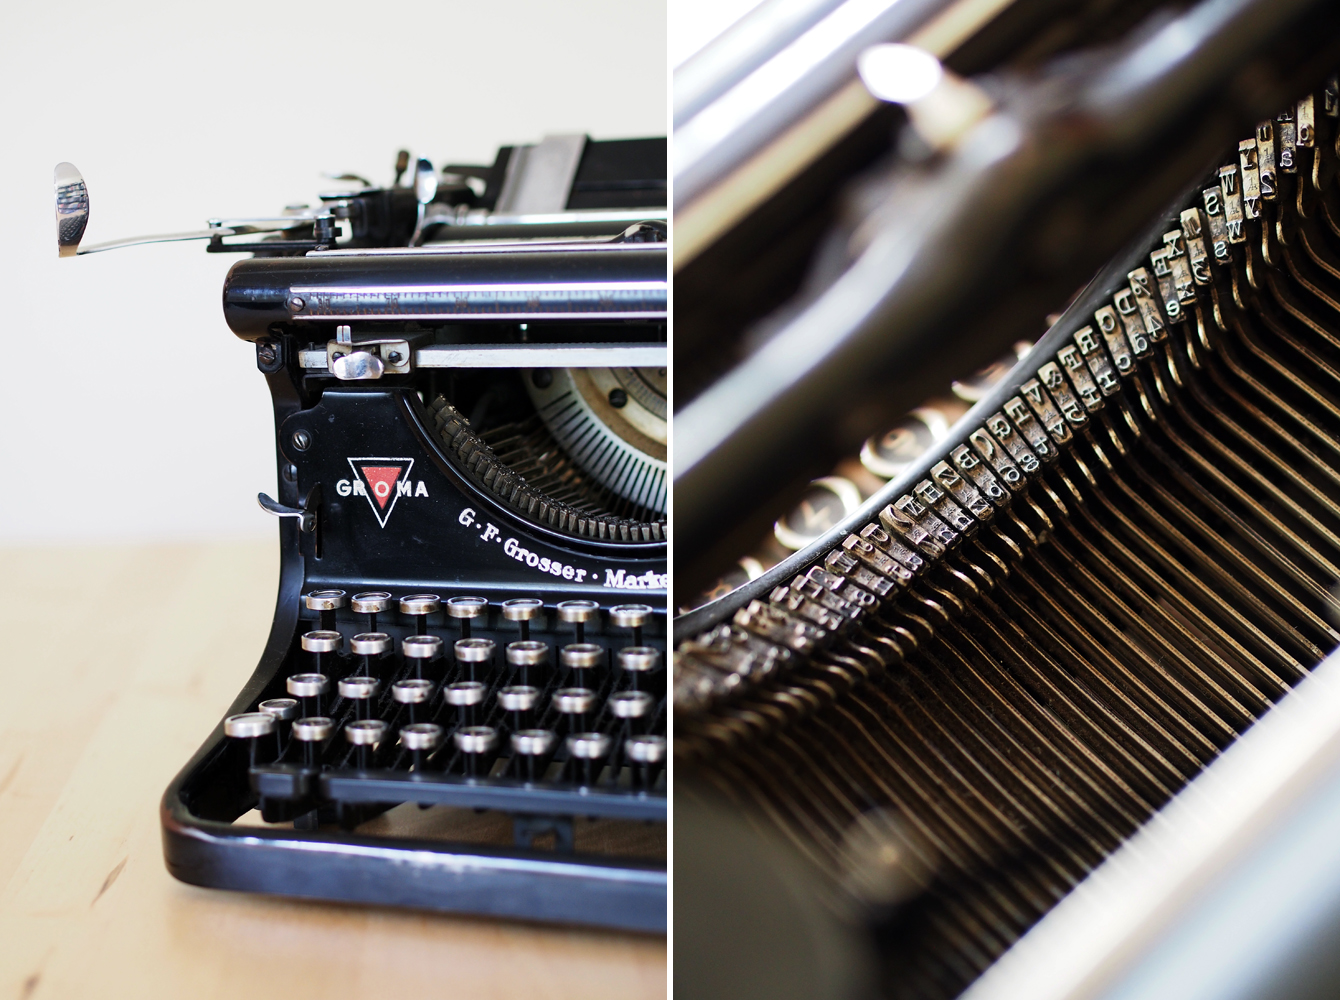 Groma Schreibsmaschine von 1924 - "Fee ist mein Name"